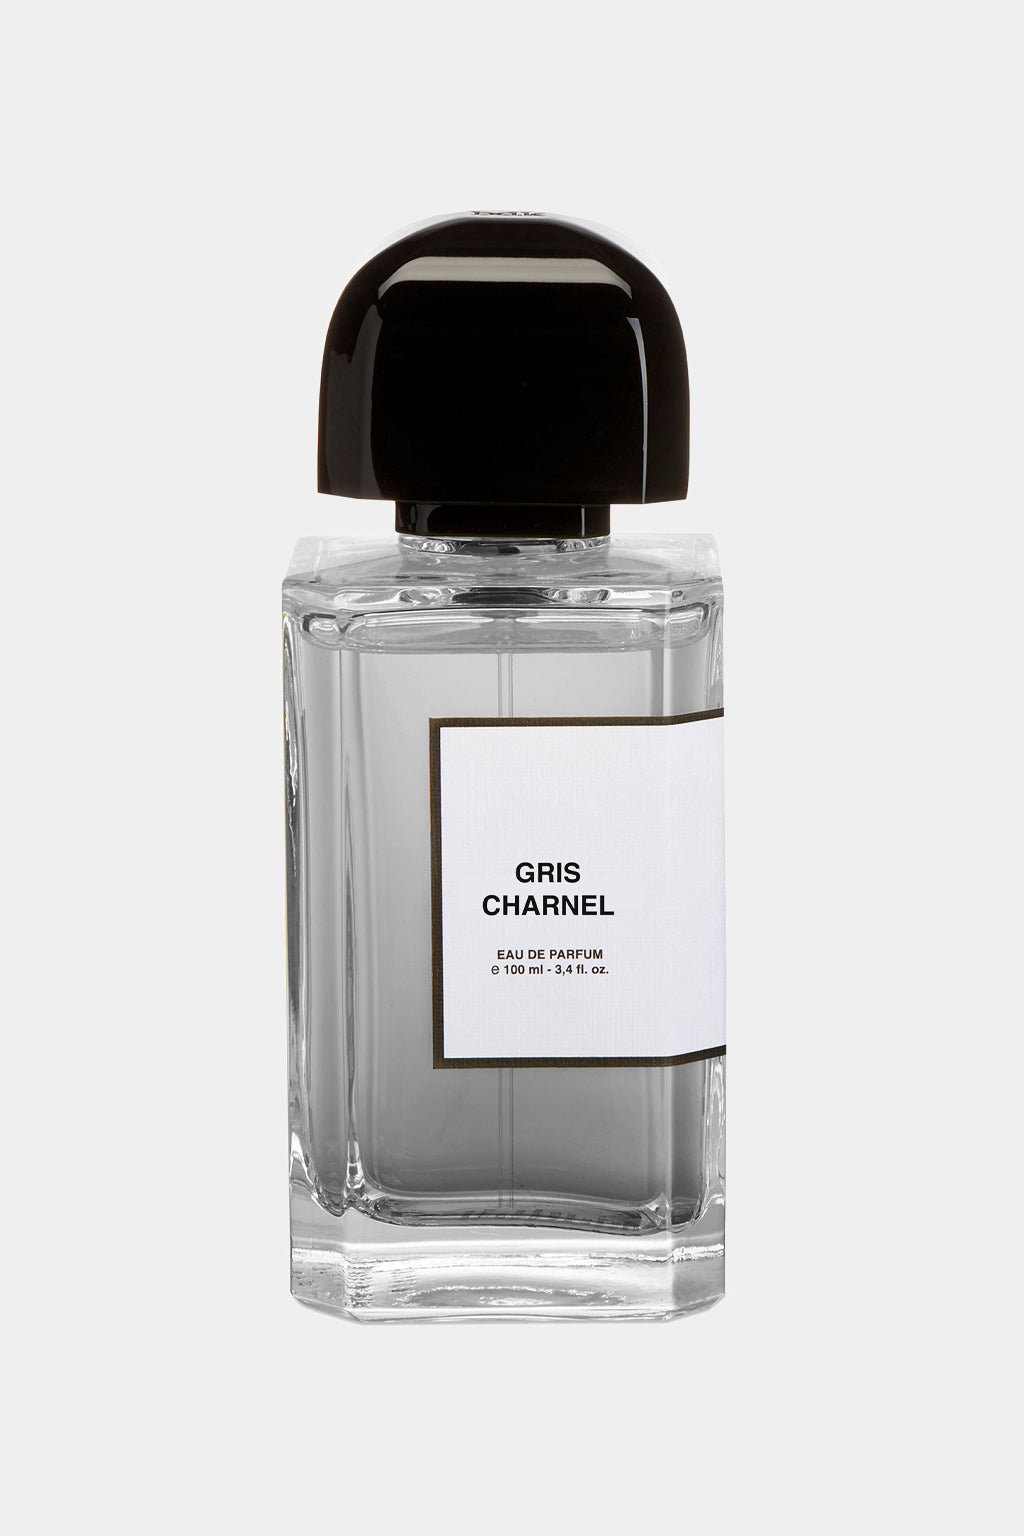 BDK - Gris Charnel Eau de Parfum